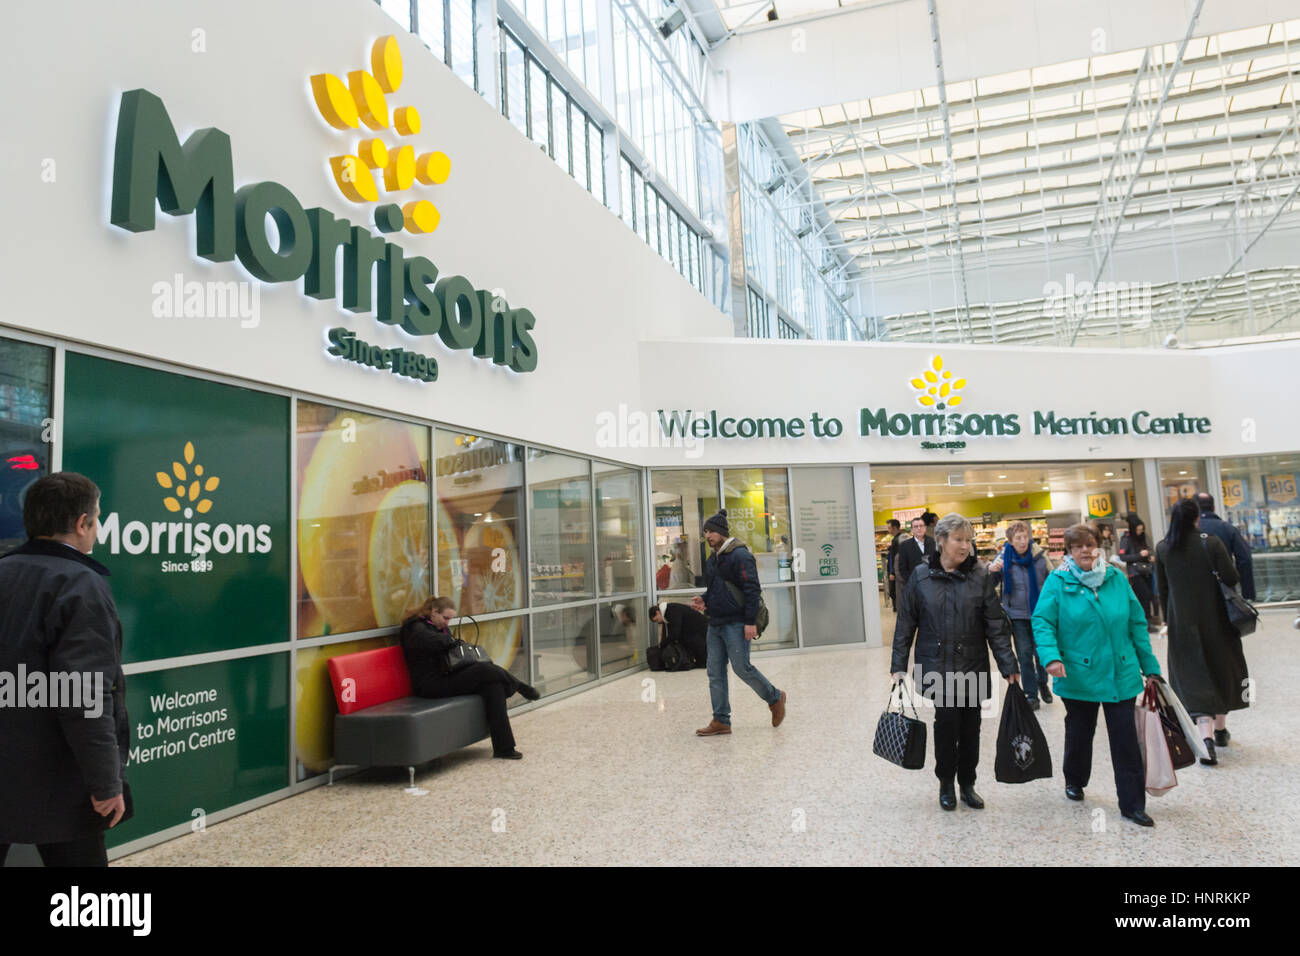 Morrisons supermercado con nuevo logo dentro el Merrion Centre, el centro de la ciudad de Leeds, Inglaterra, Reino Unido. Foto de stock